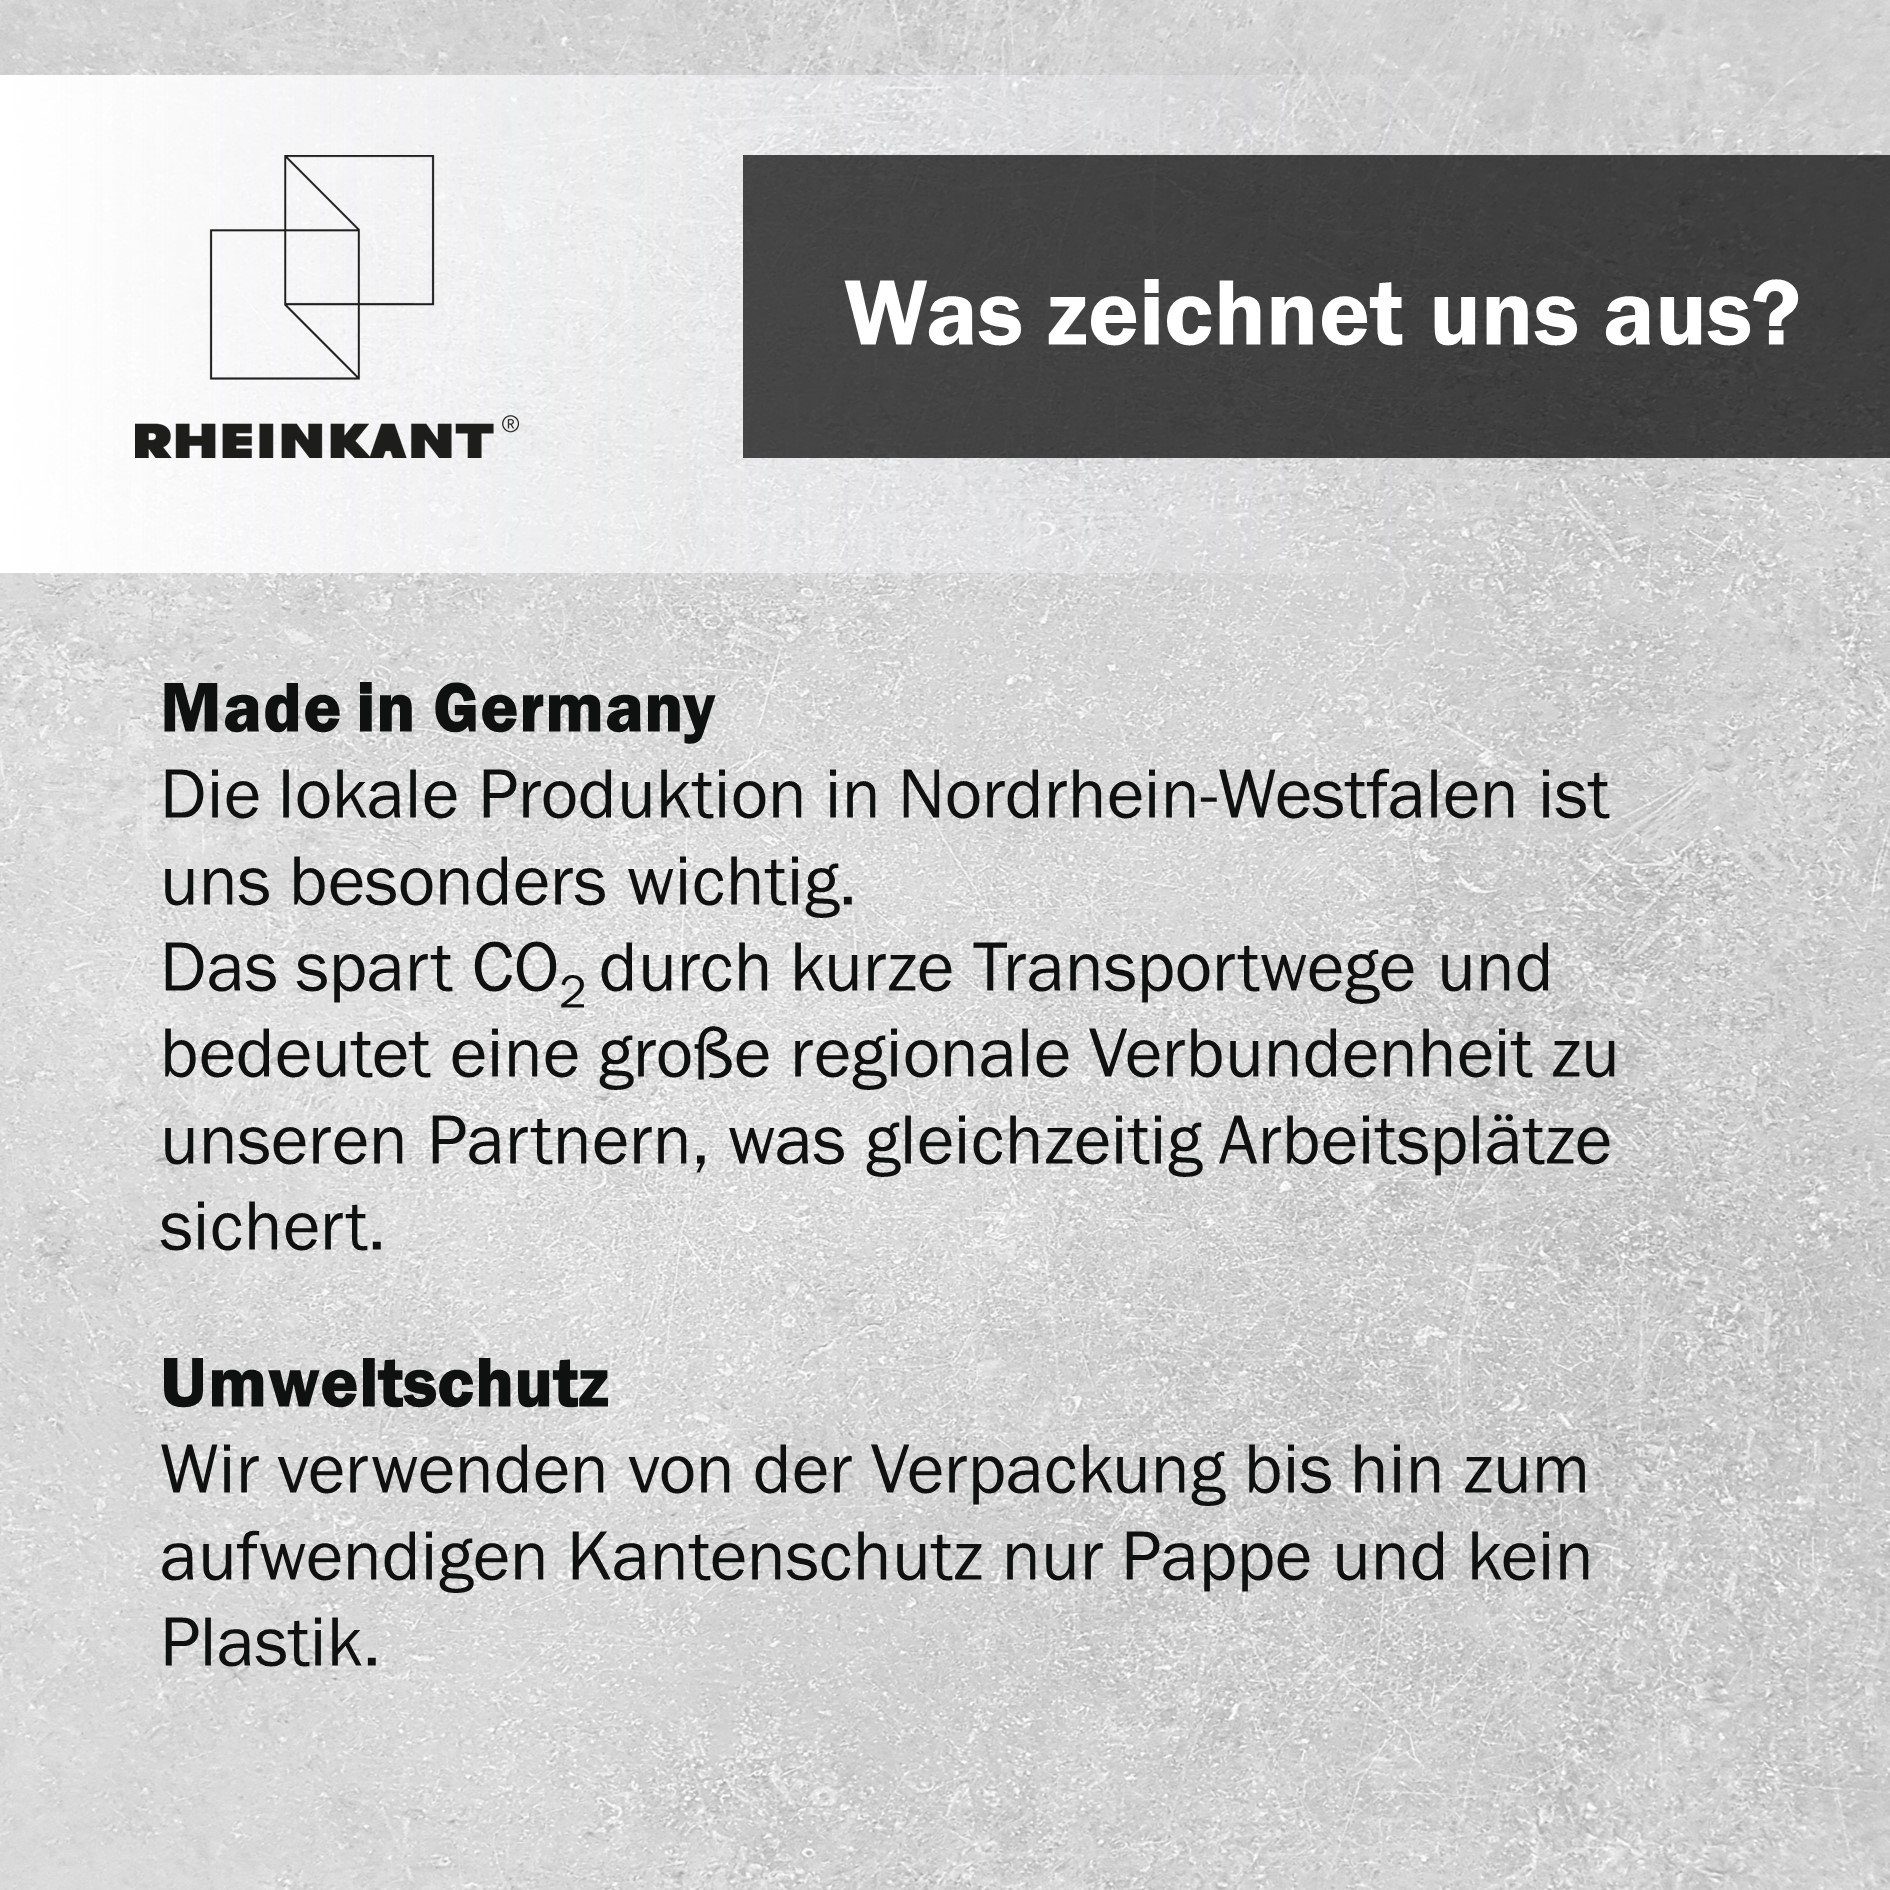 Wandregal RHEINKANT Made Germany, Germany, Stahl. in HEIN, Bücherregal Made pulverbeschichtetem 98 cm, hochwertigem Weiß in Aus Schweberegal,